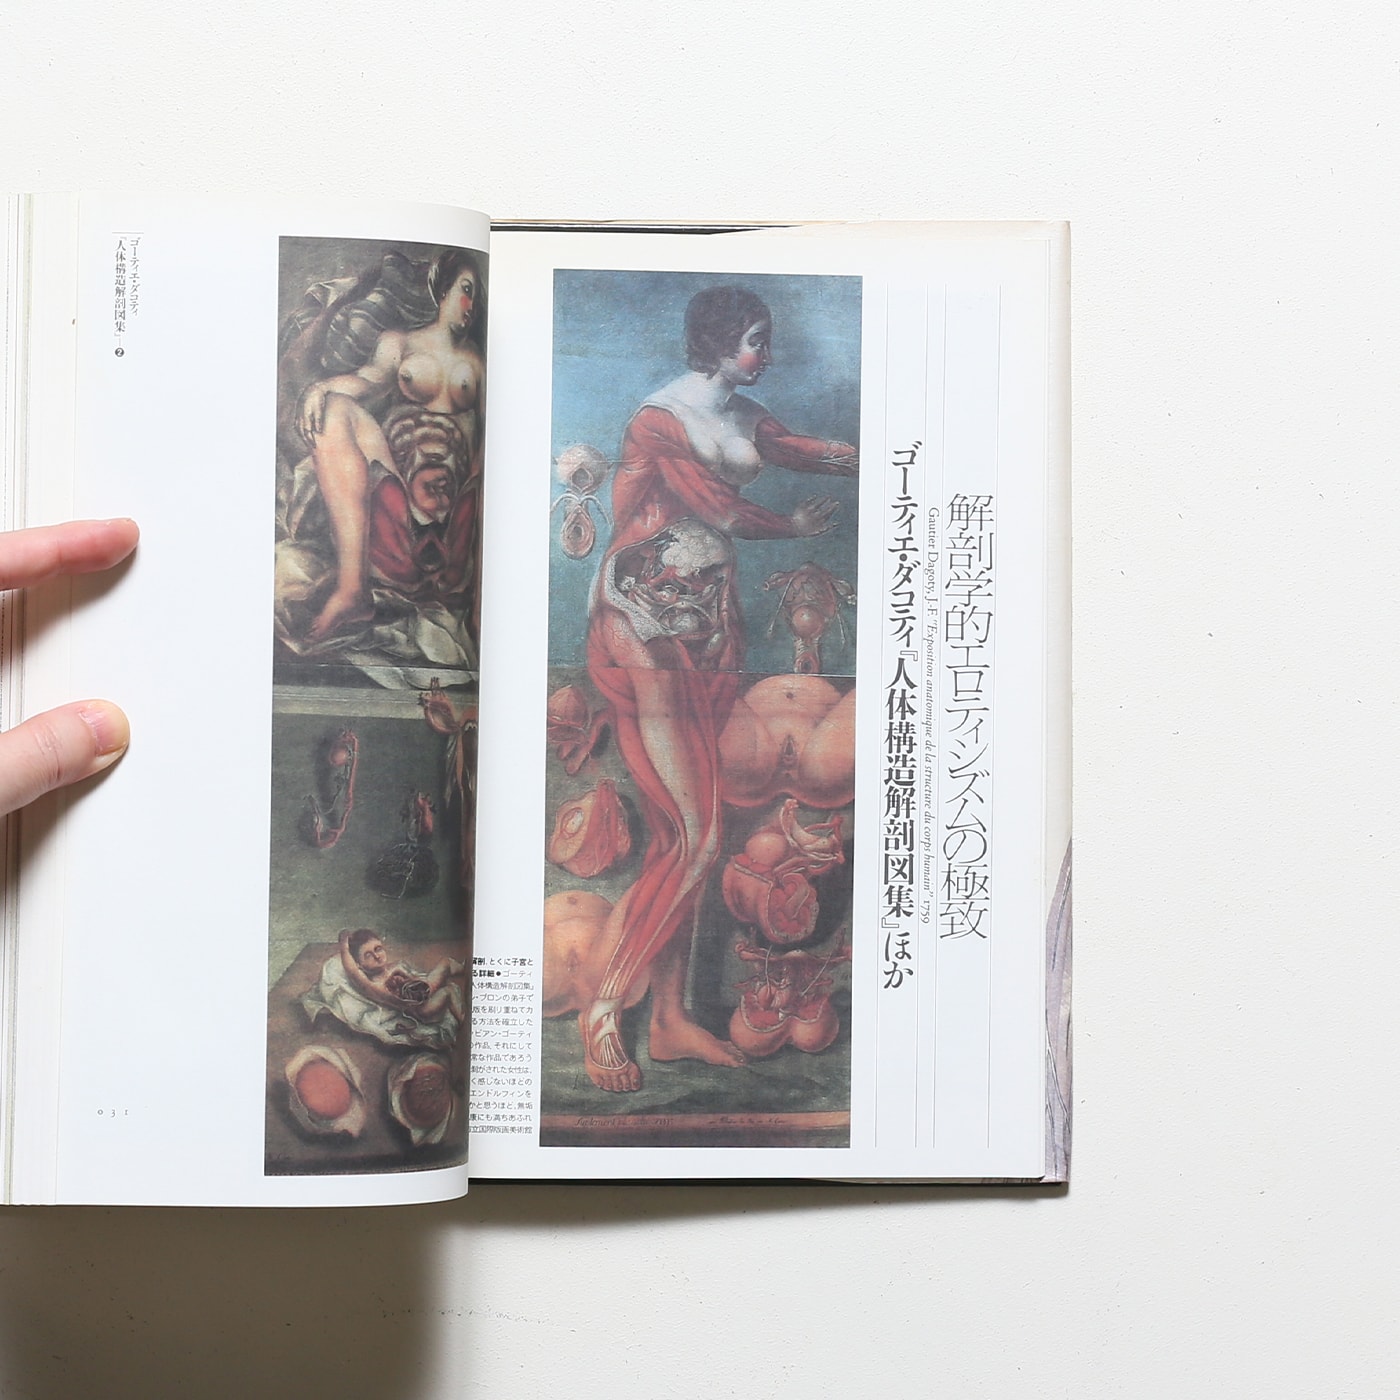 ファンタスティック12 第11巻 解剖の美学 | 荒俣宏 | nostos books 